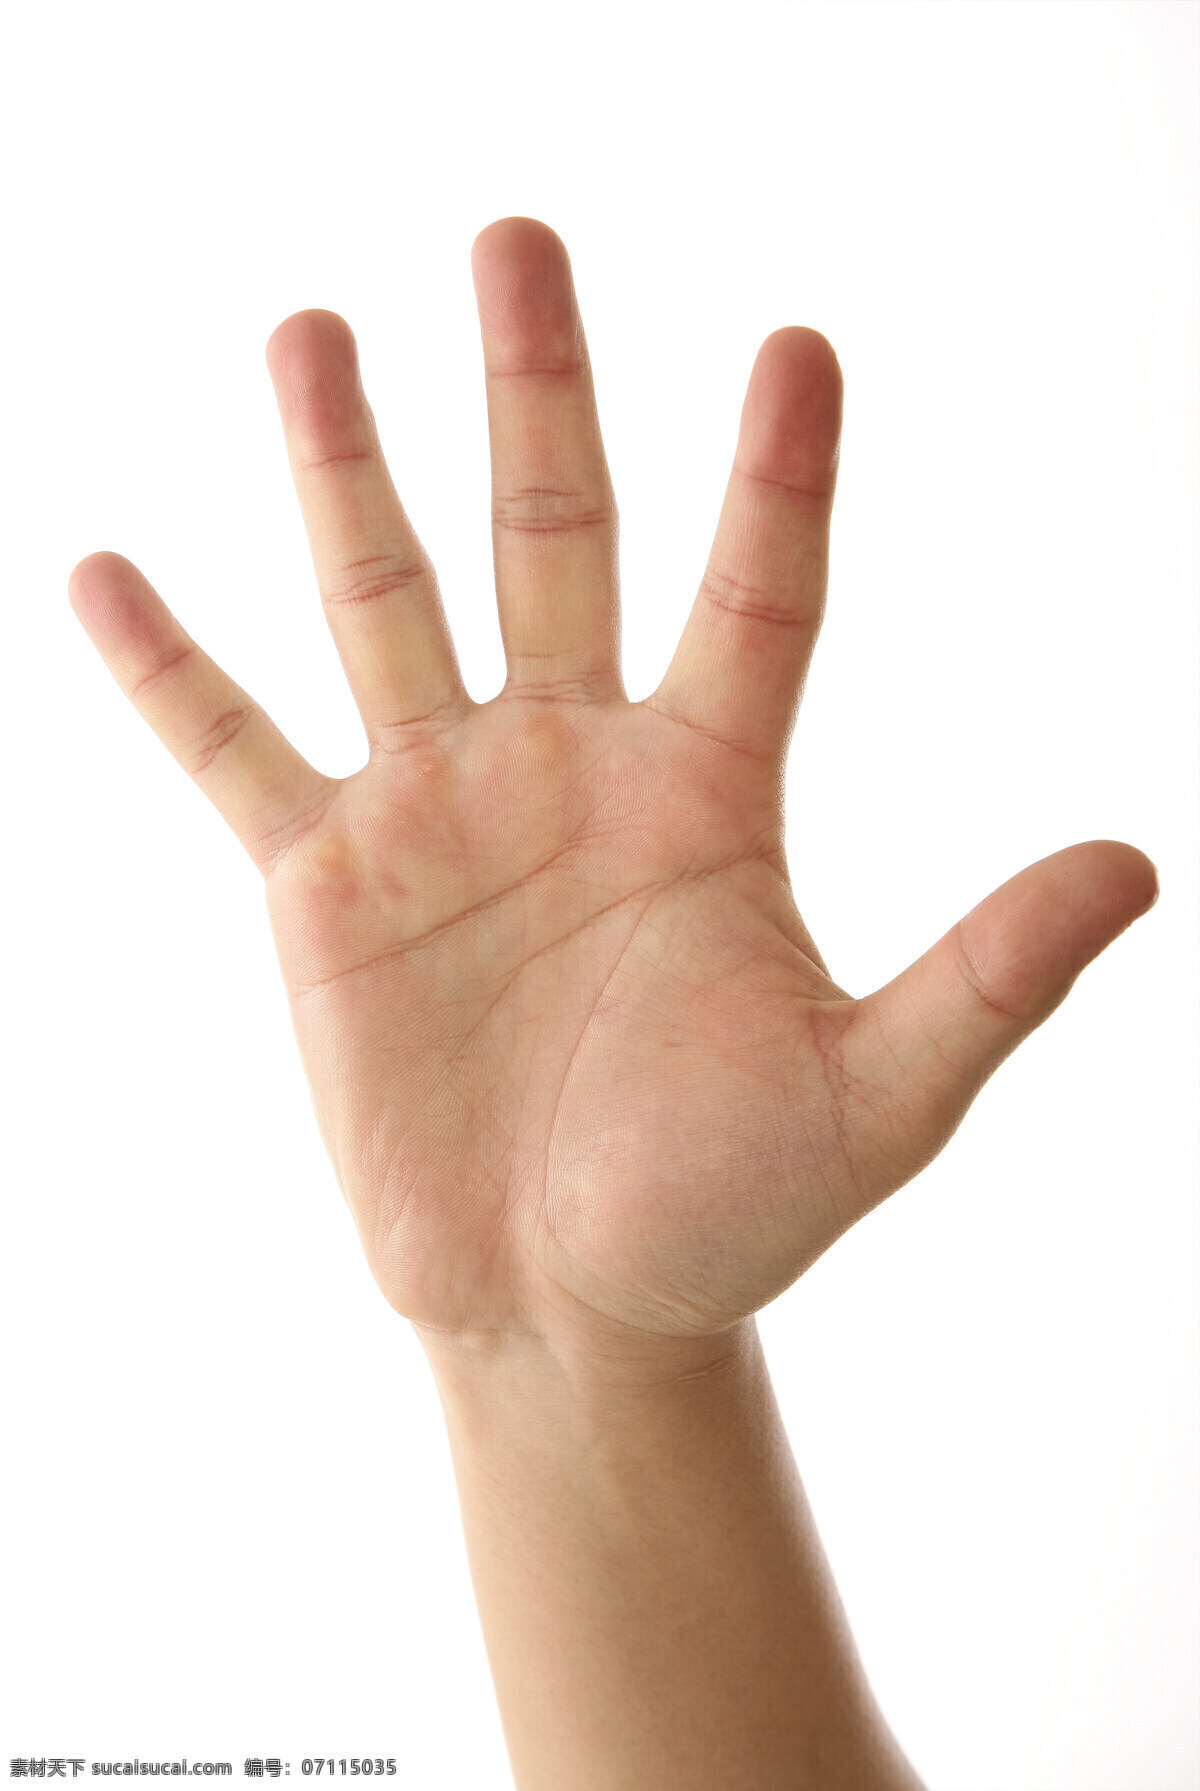 手掌 手势 手 五指 手语 摄影图 高清图片 人体器官图 人物图片